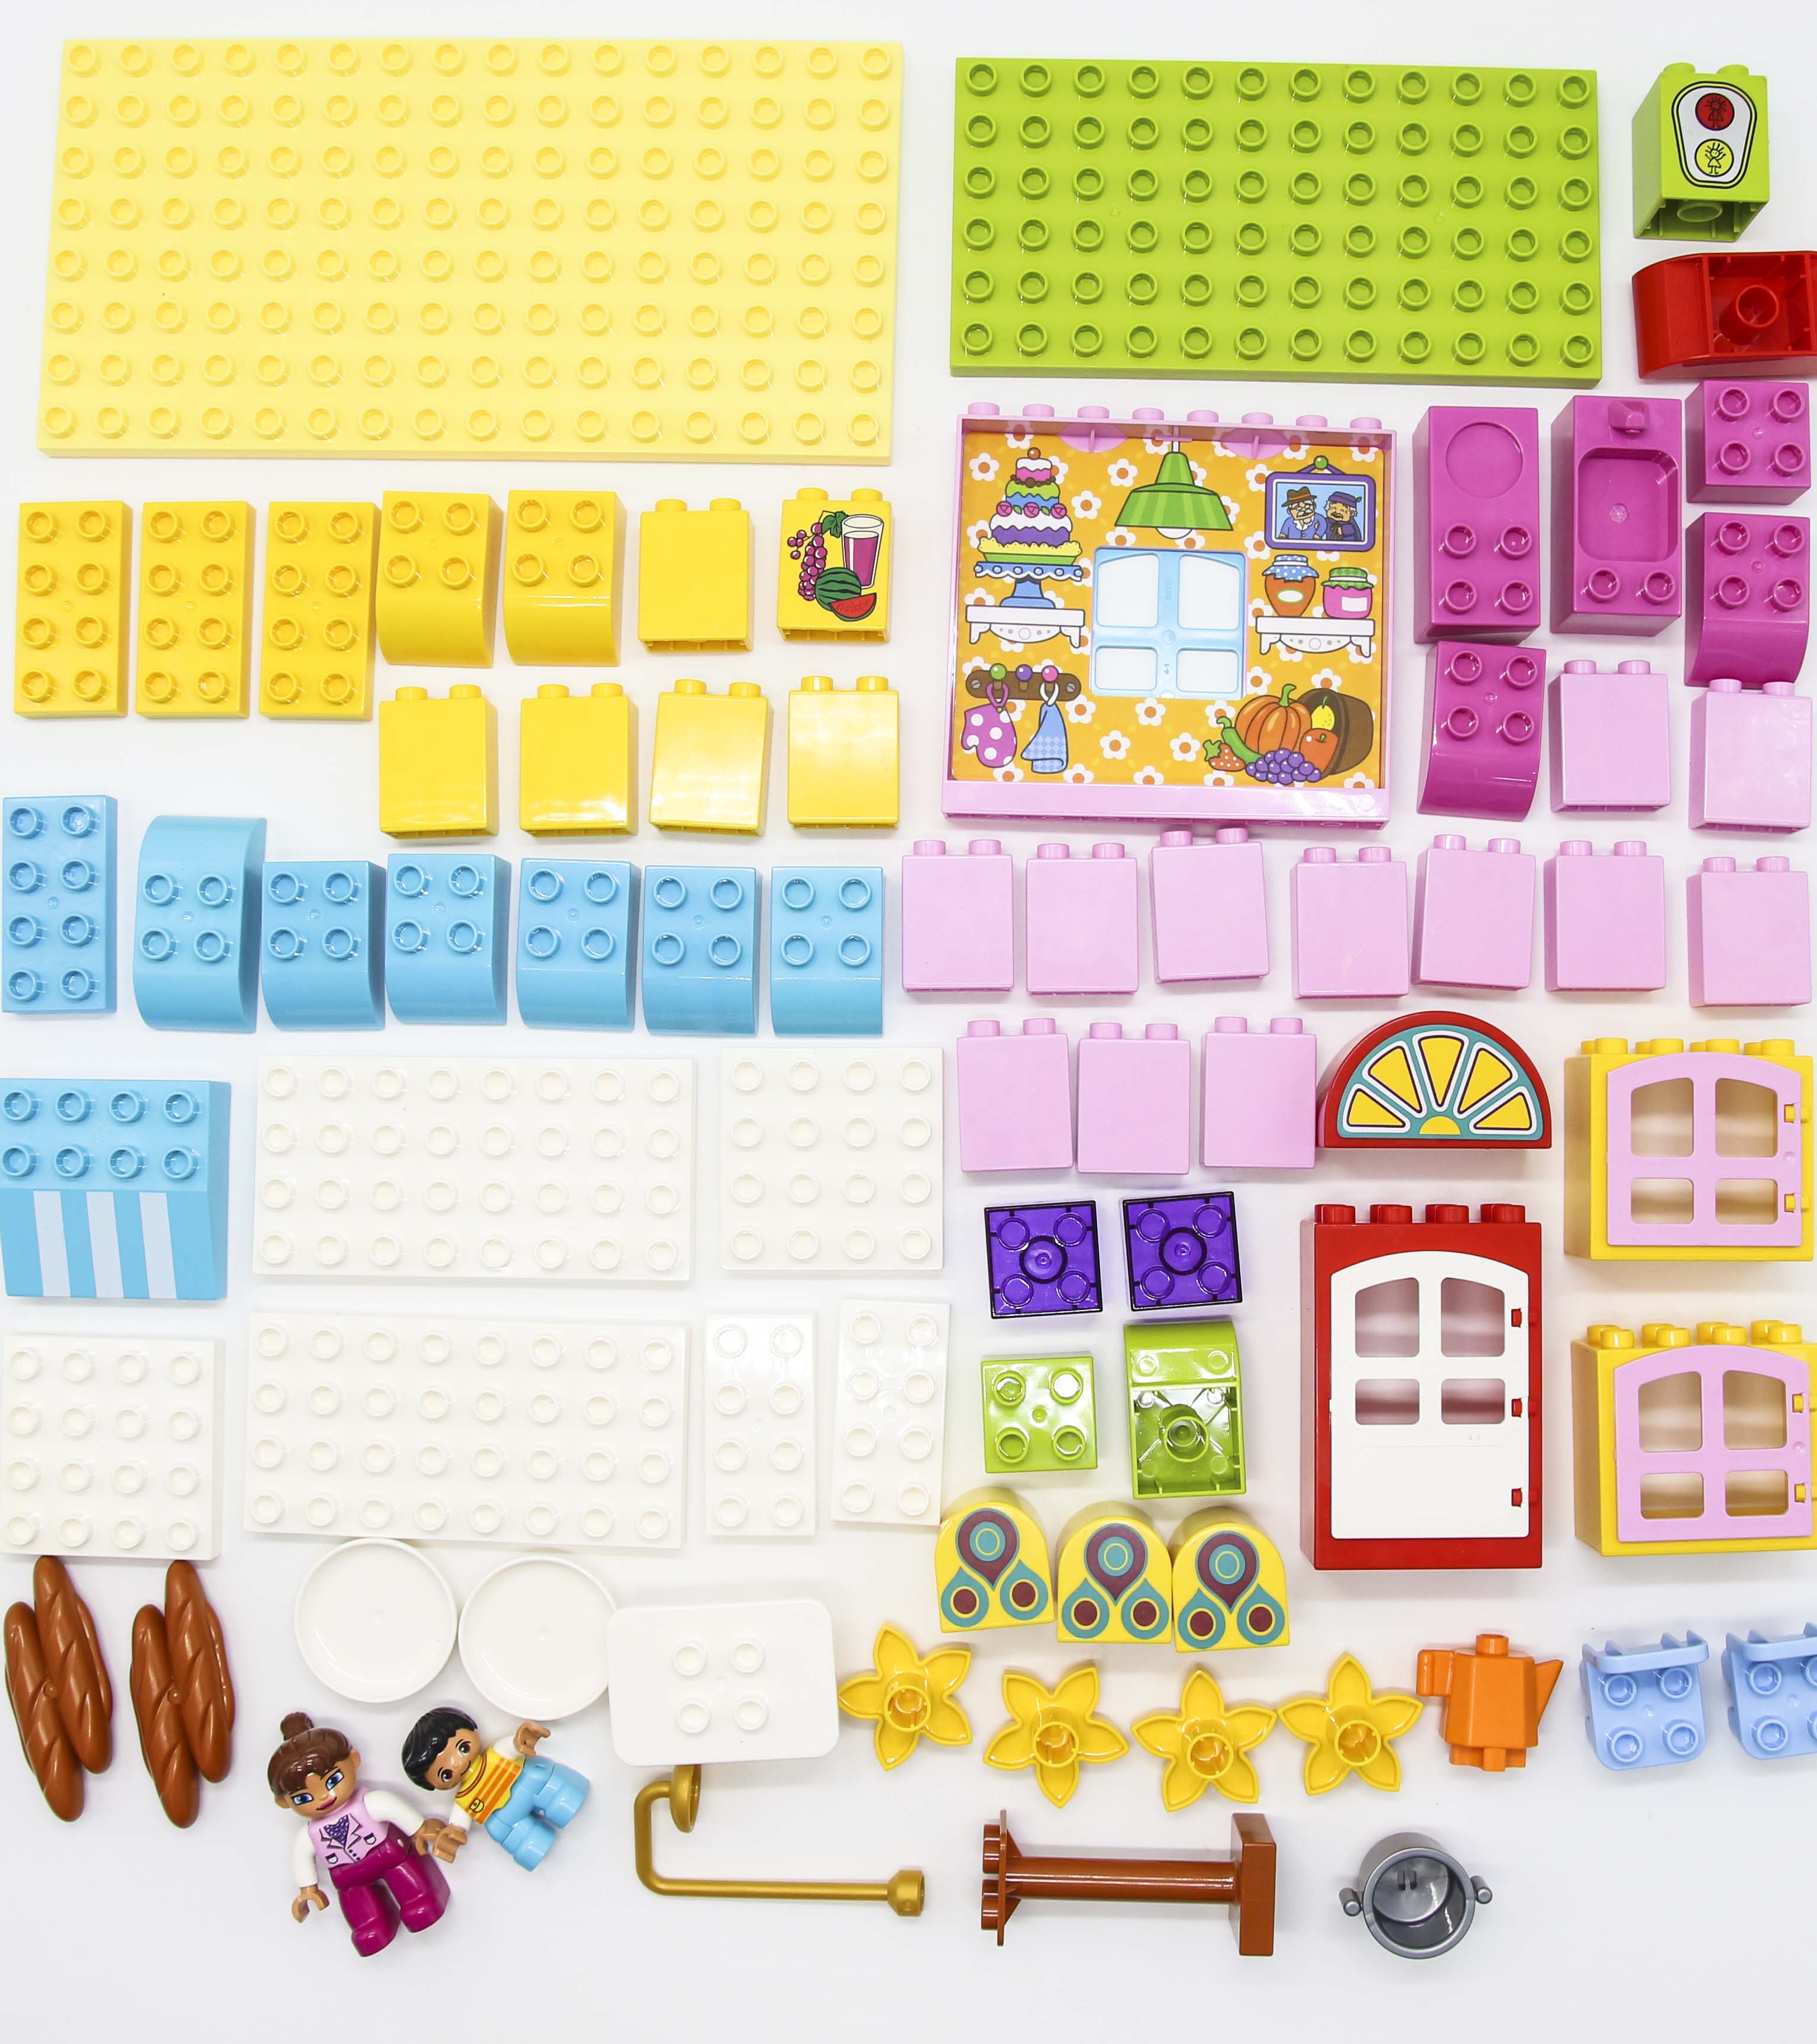 Bộ đồ chơi lắp ghép, ghép hình smoneo duplo cho bé cho bé nhà hàng vui vẻ 81 chi tiết - Toyshouse - 55002